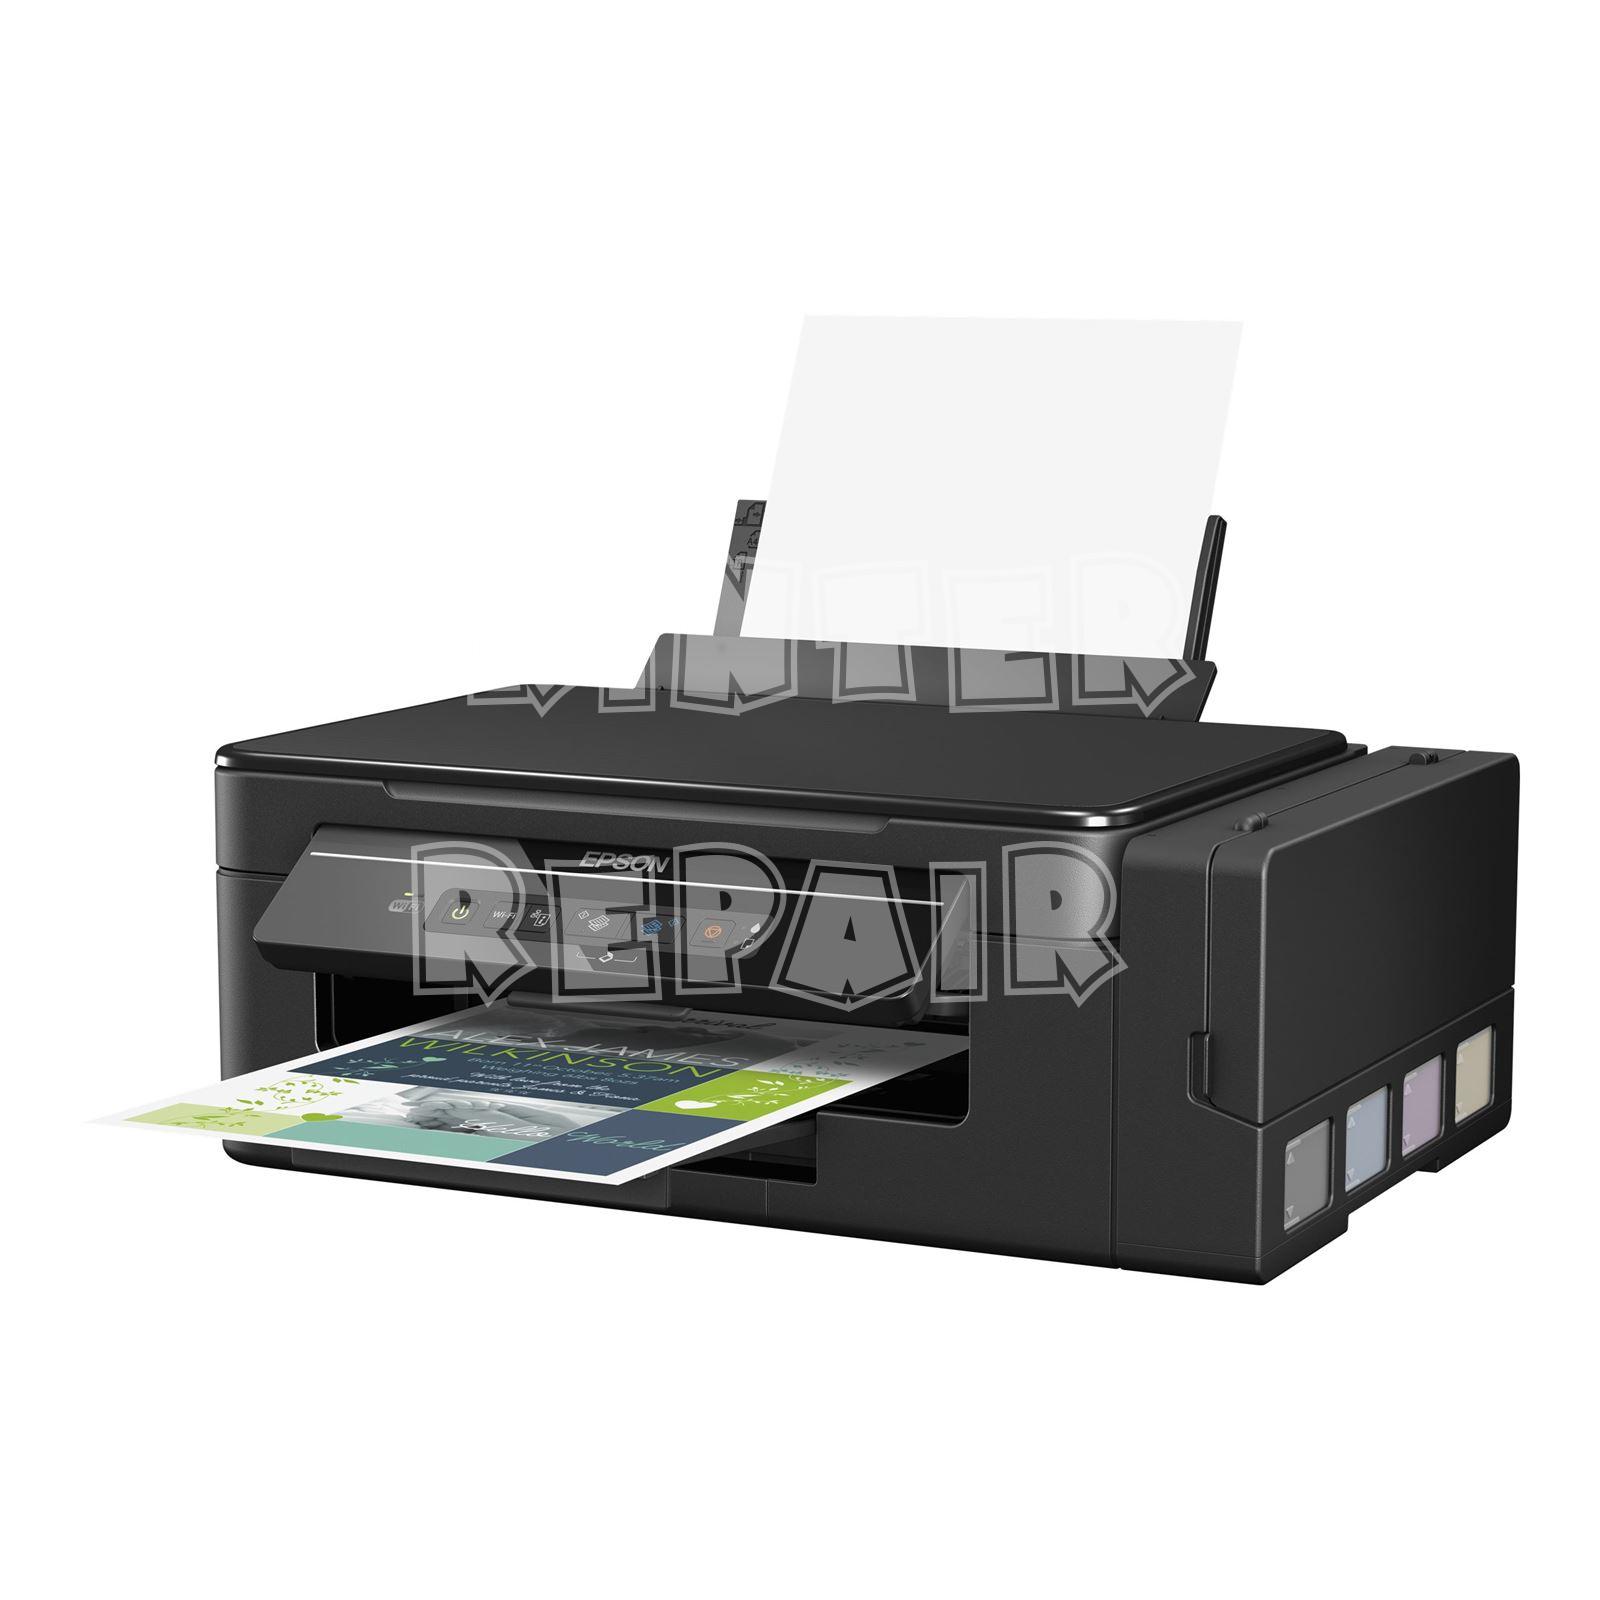 EPSON EcoTank ET 4500 A4 Multifunction Colour Printer